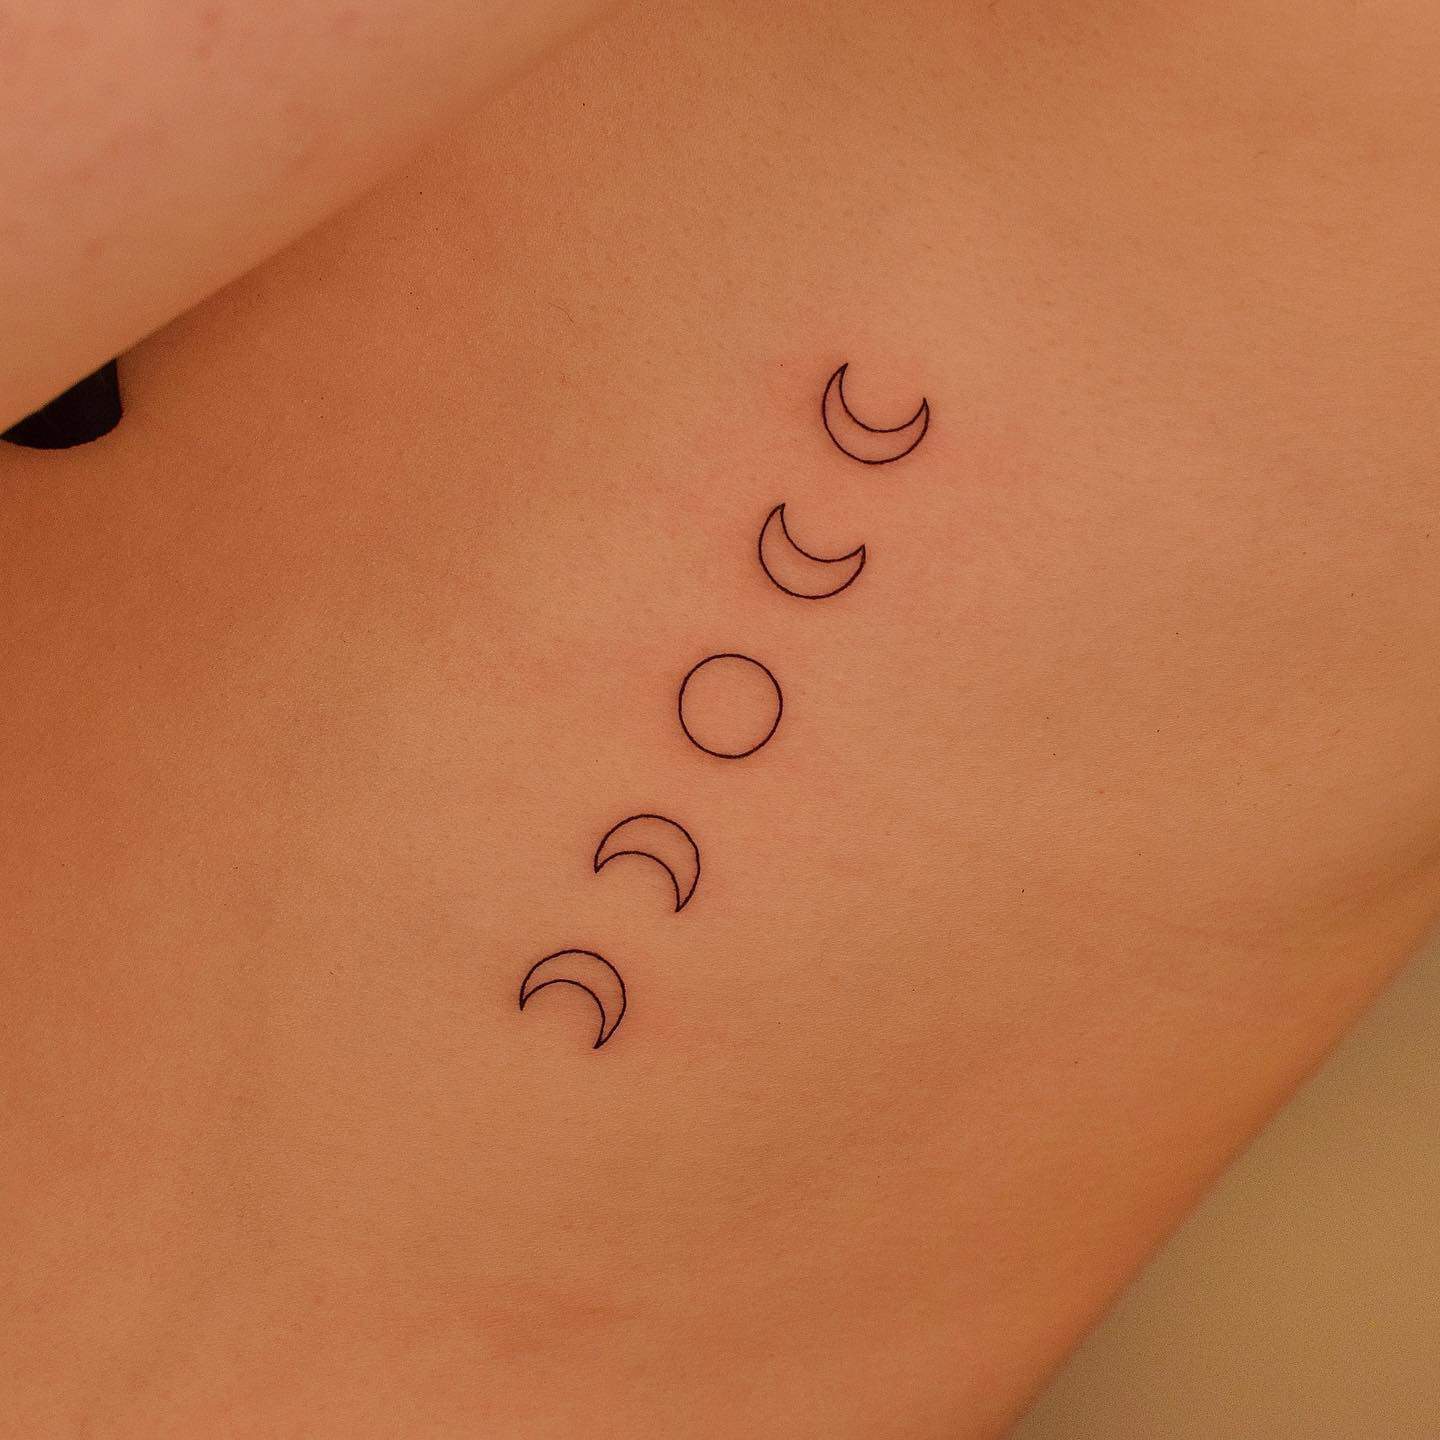 Moon tattoo by tattooer jina